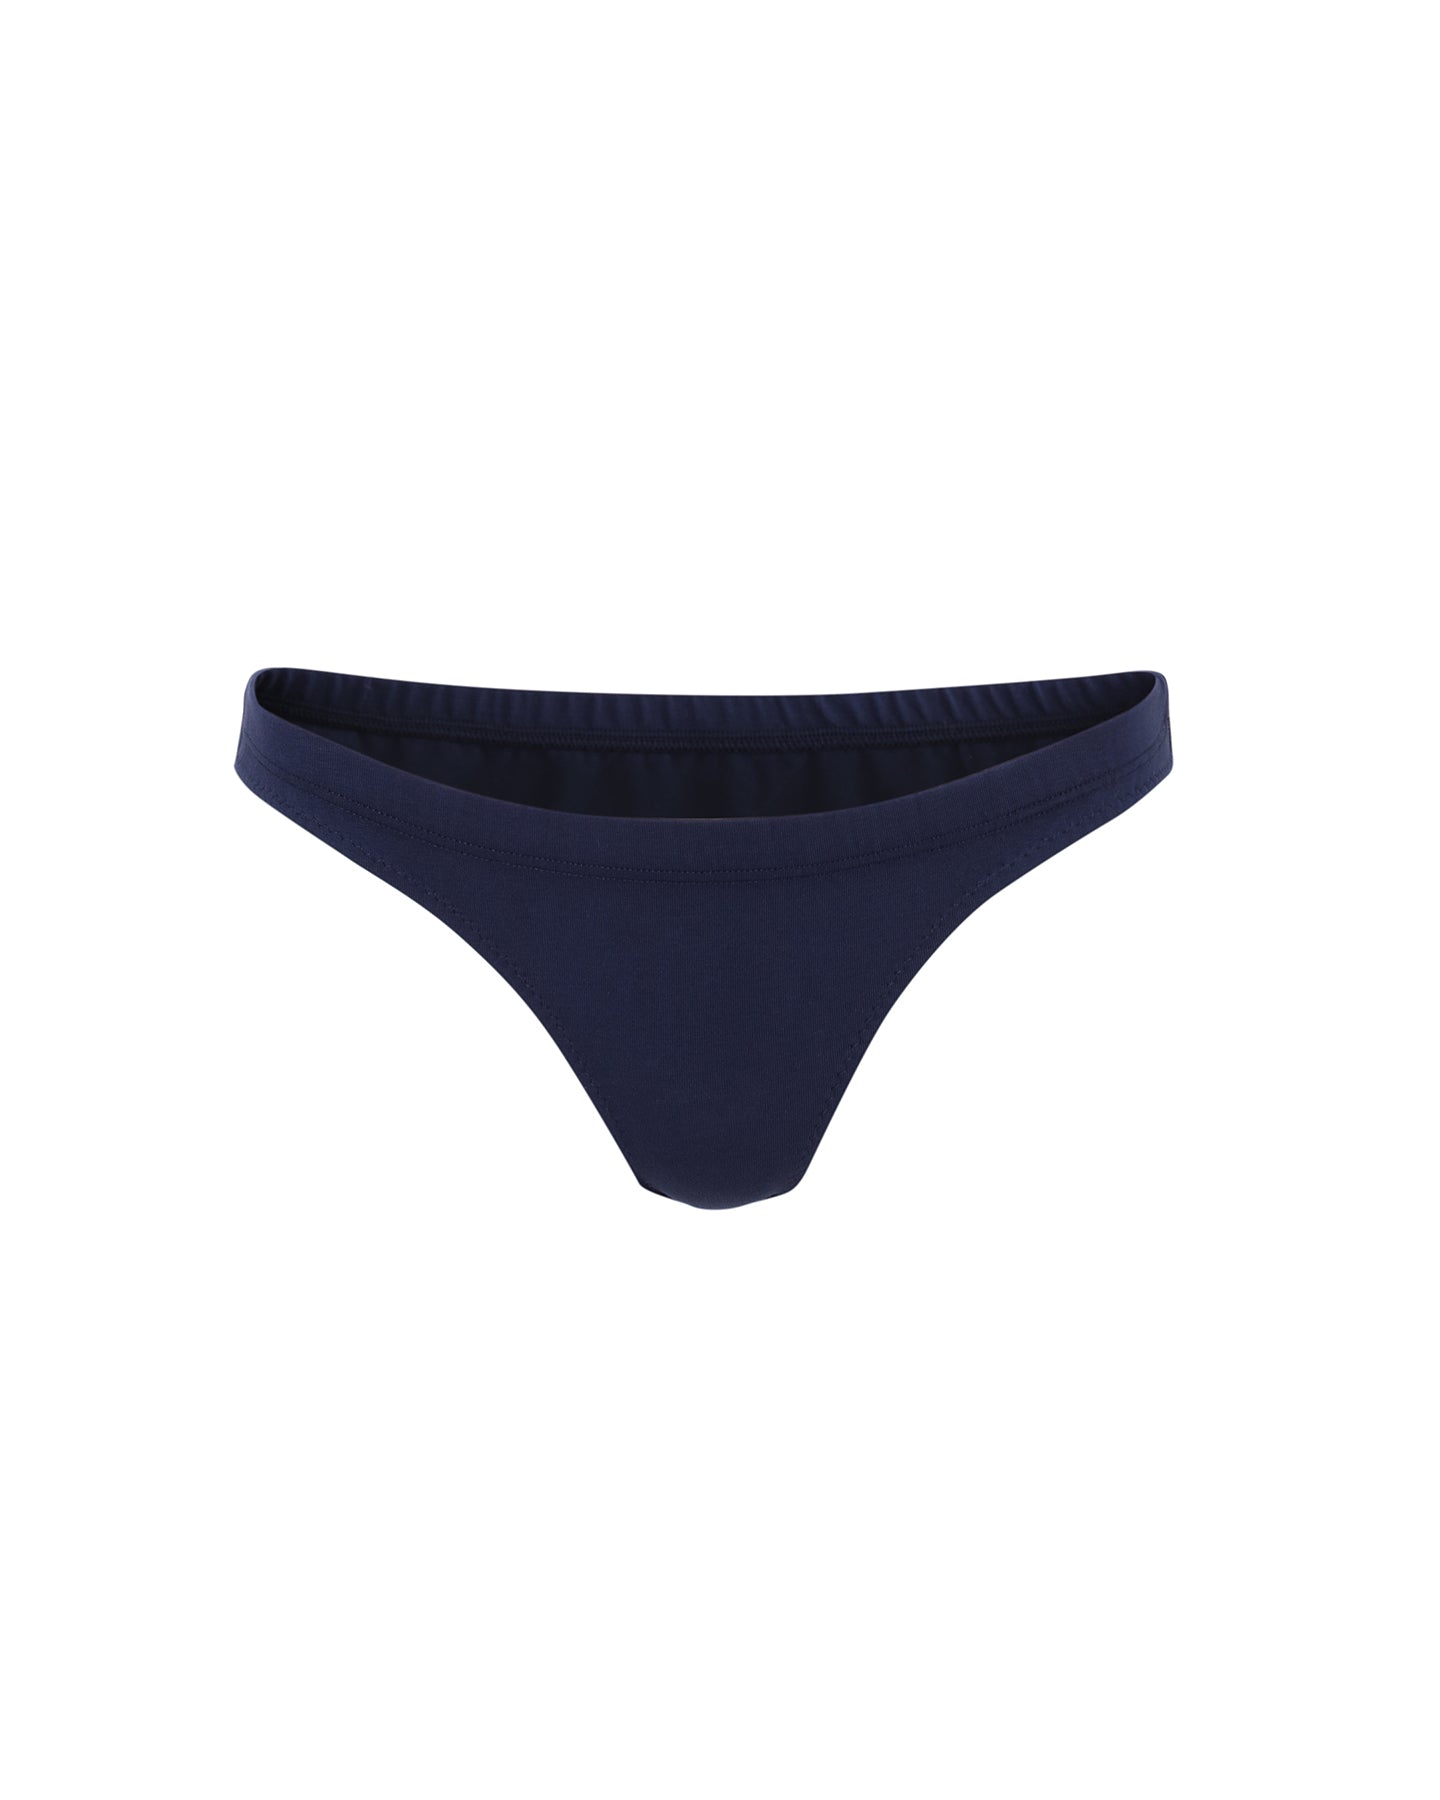 B91xZ Womens Cotton Underwear Plus Size Breathable Cotton-Mesh Brief  Underwear,Navy M 